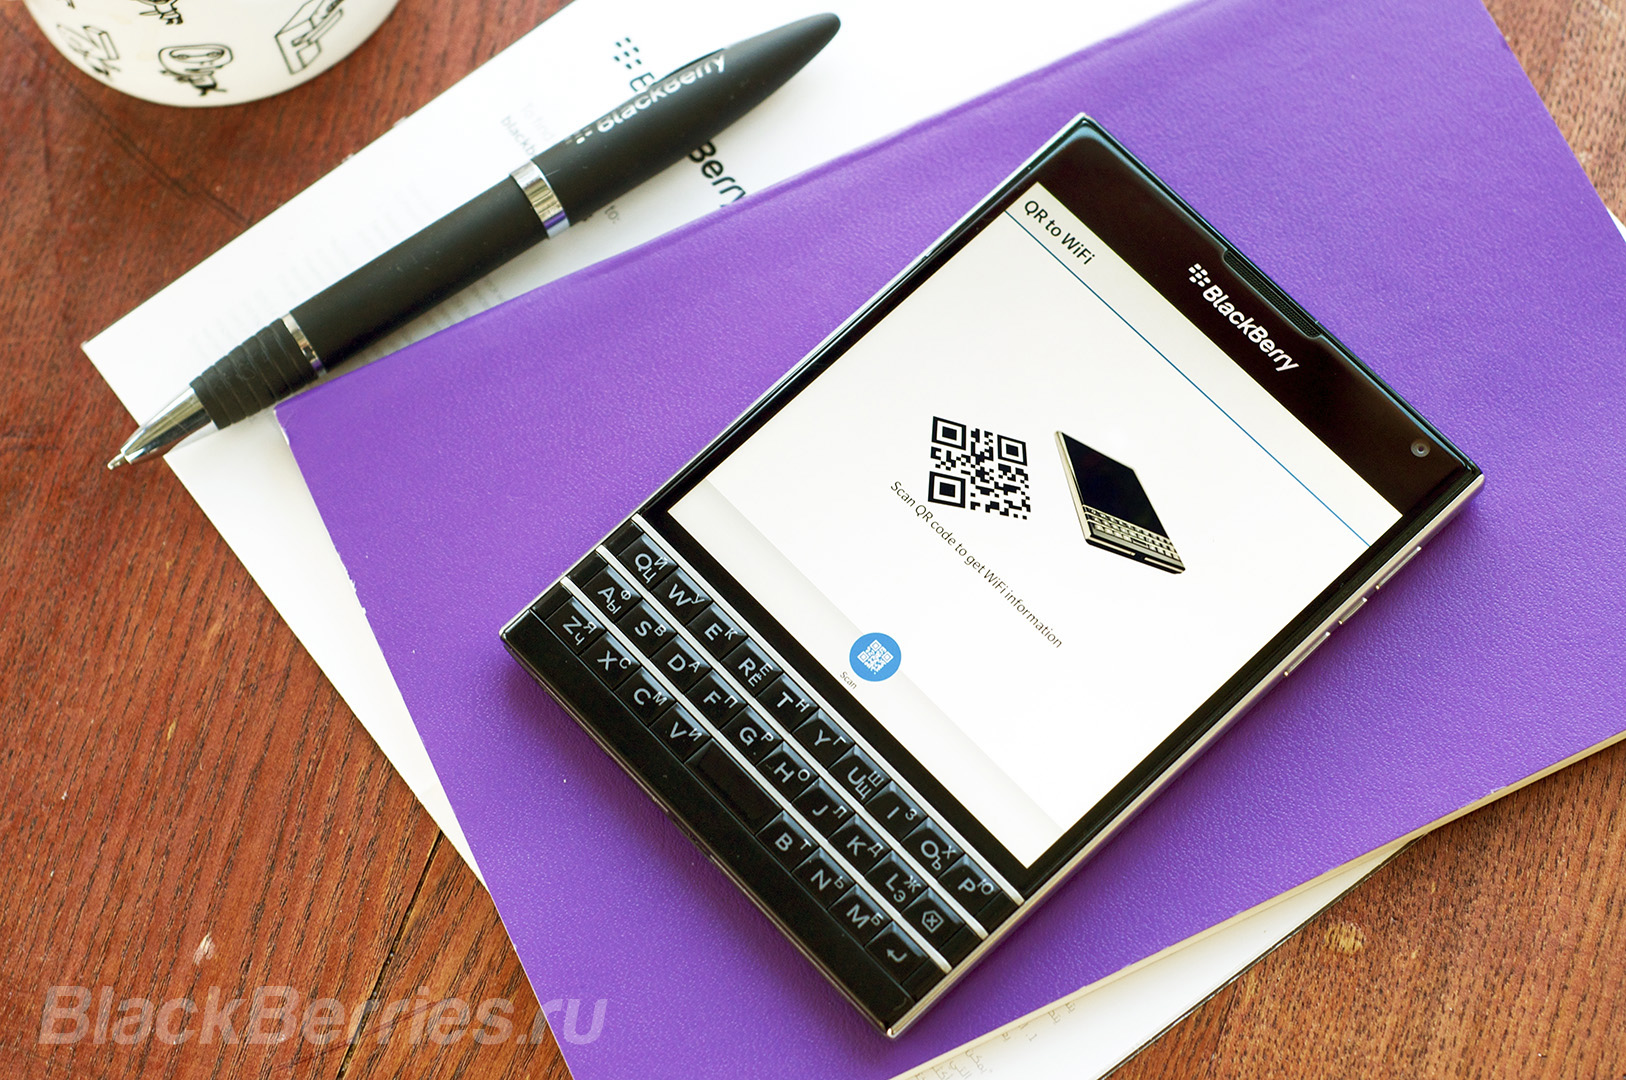 BlackBerry-Apps-29-11-3